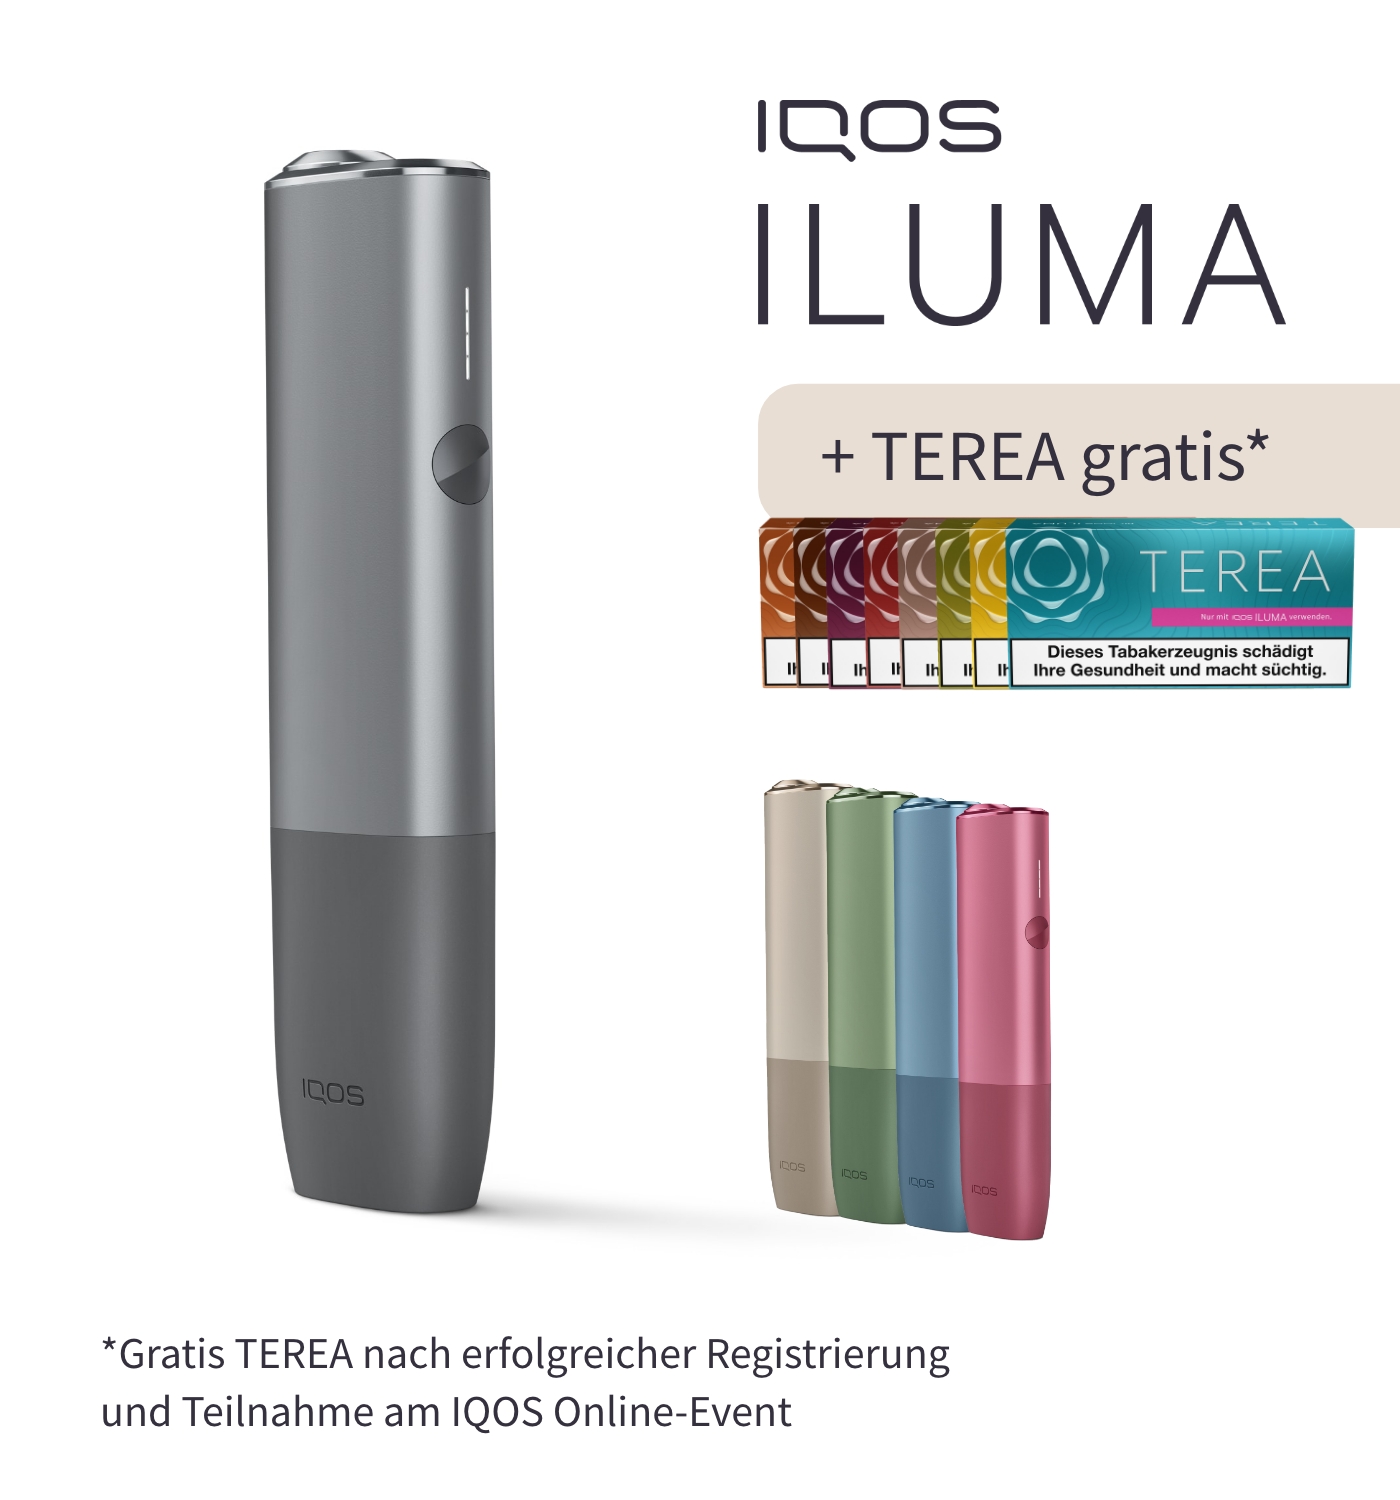 IQOS Terea Turquoise Tabaksticks 20 Stück jetzt online kaufen